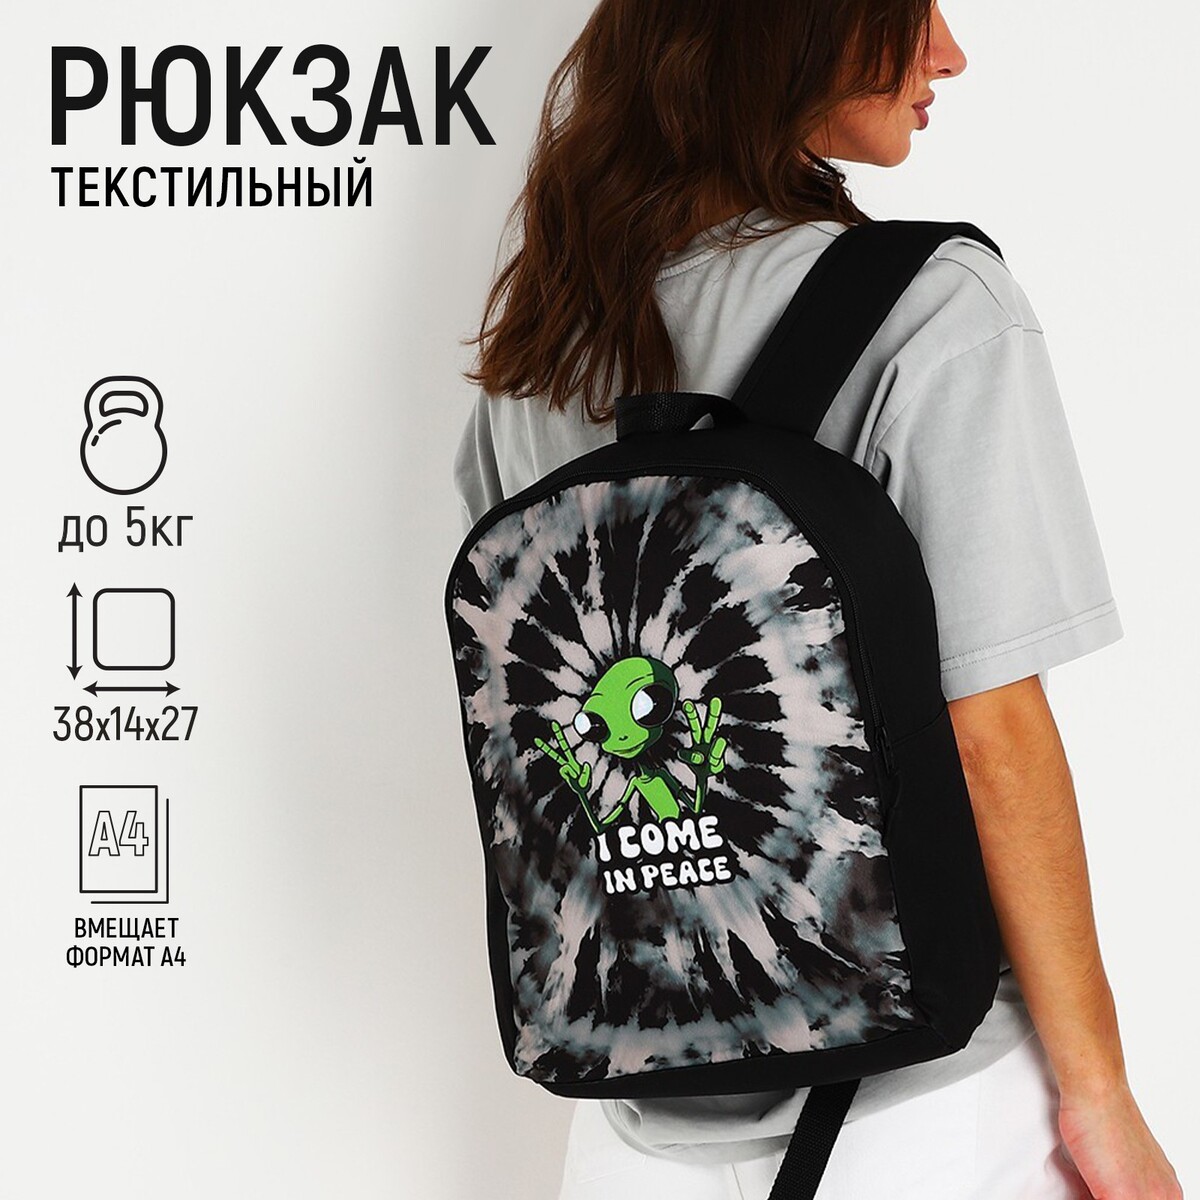 Рюкзак текстильный инопланетянин, 38х14х27 см, цвет черный рюкзак текстильный котики 38х14х27 см